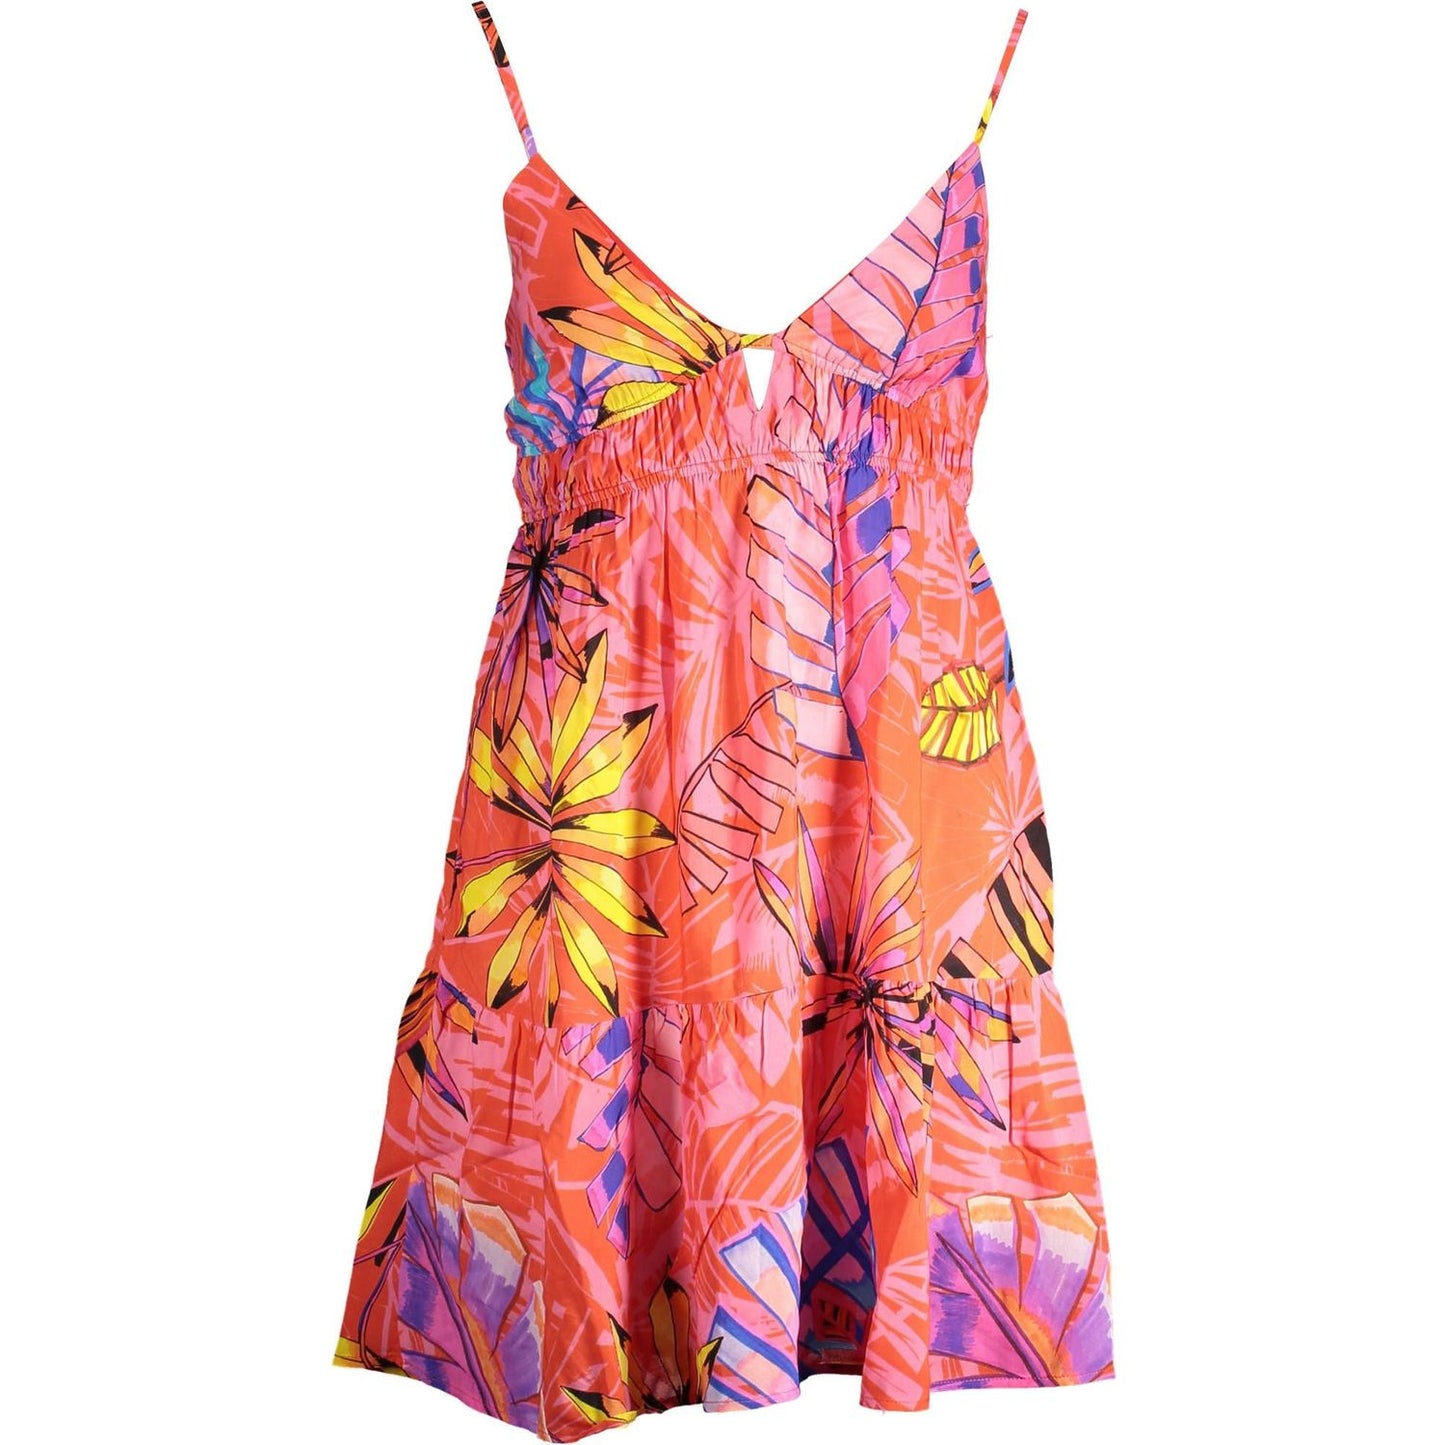 DesigualRadiant Pink Summer Dress with Delicate DetailsMcRichard Designer Brands£99.00